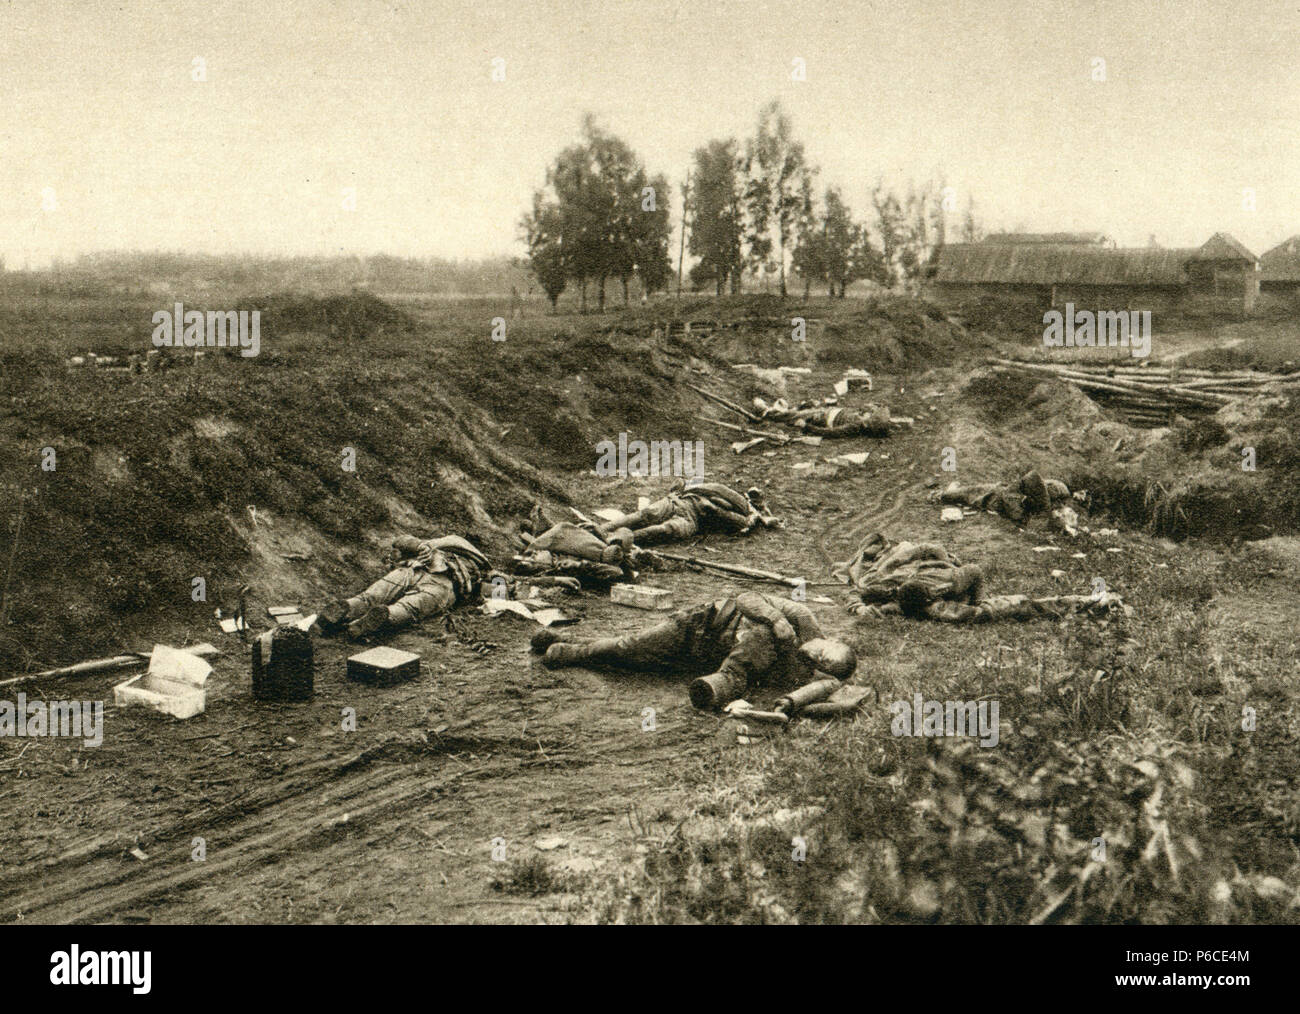 battlefield, eastern front, ww1, wwi, world war one Stock Photo